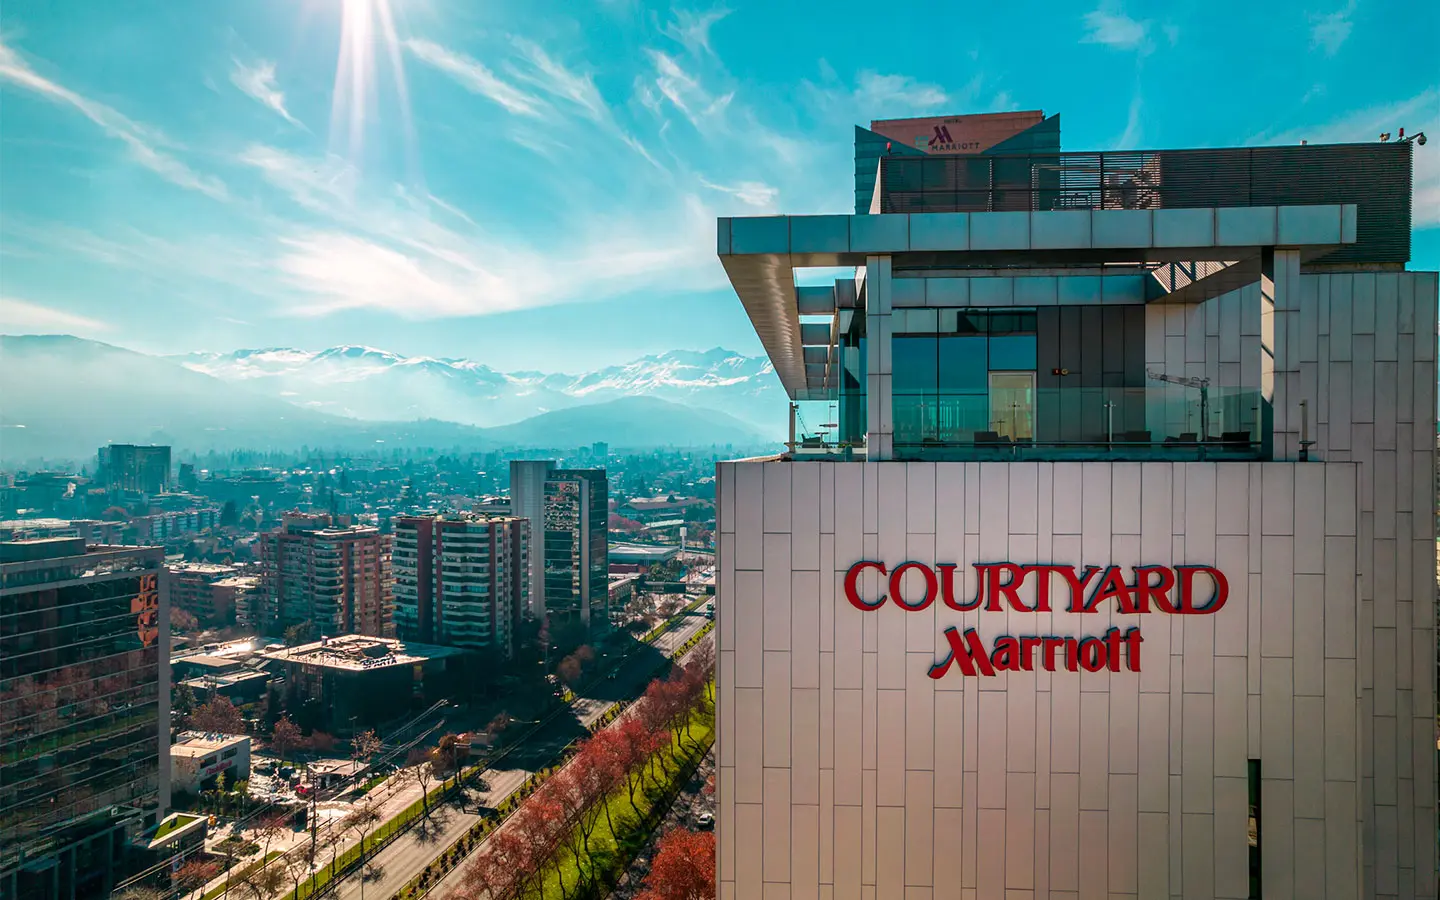 Courtyard Santiago Las Condes: Sustentabilidad y Hospitalidad de Calidad